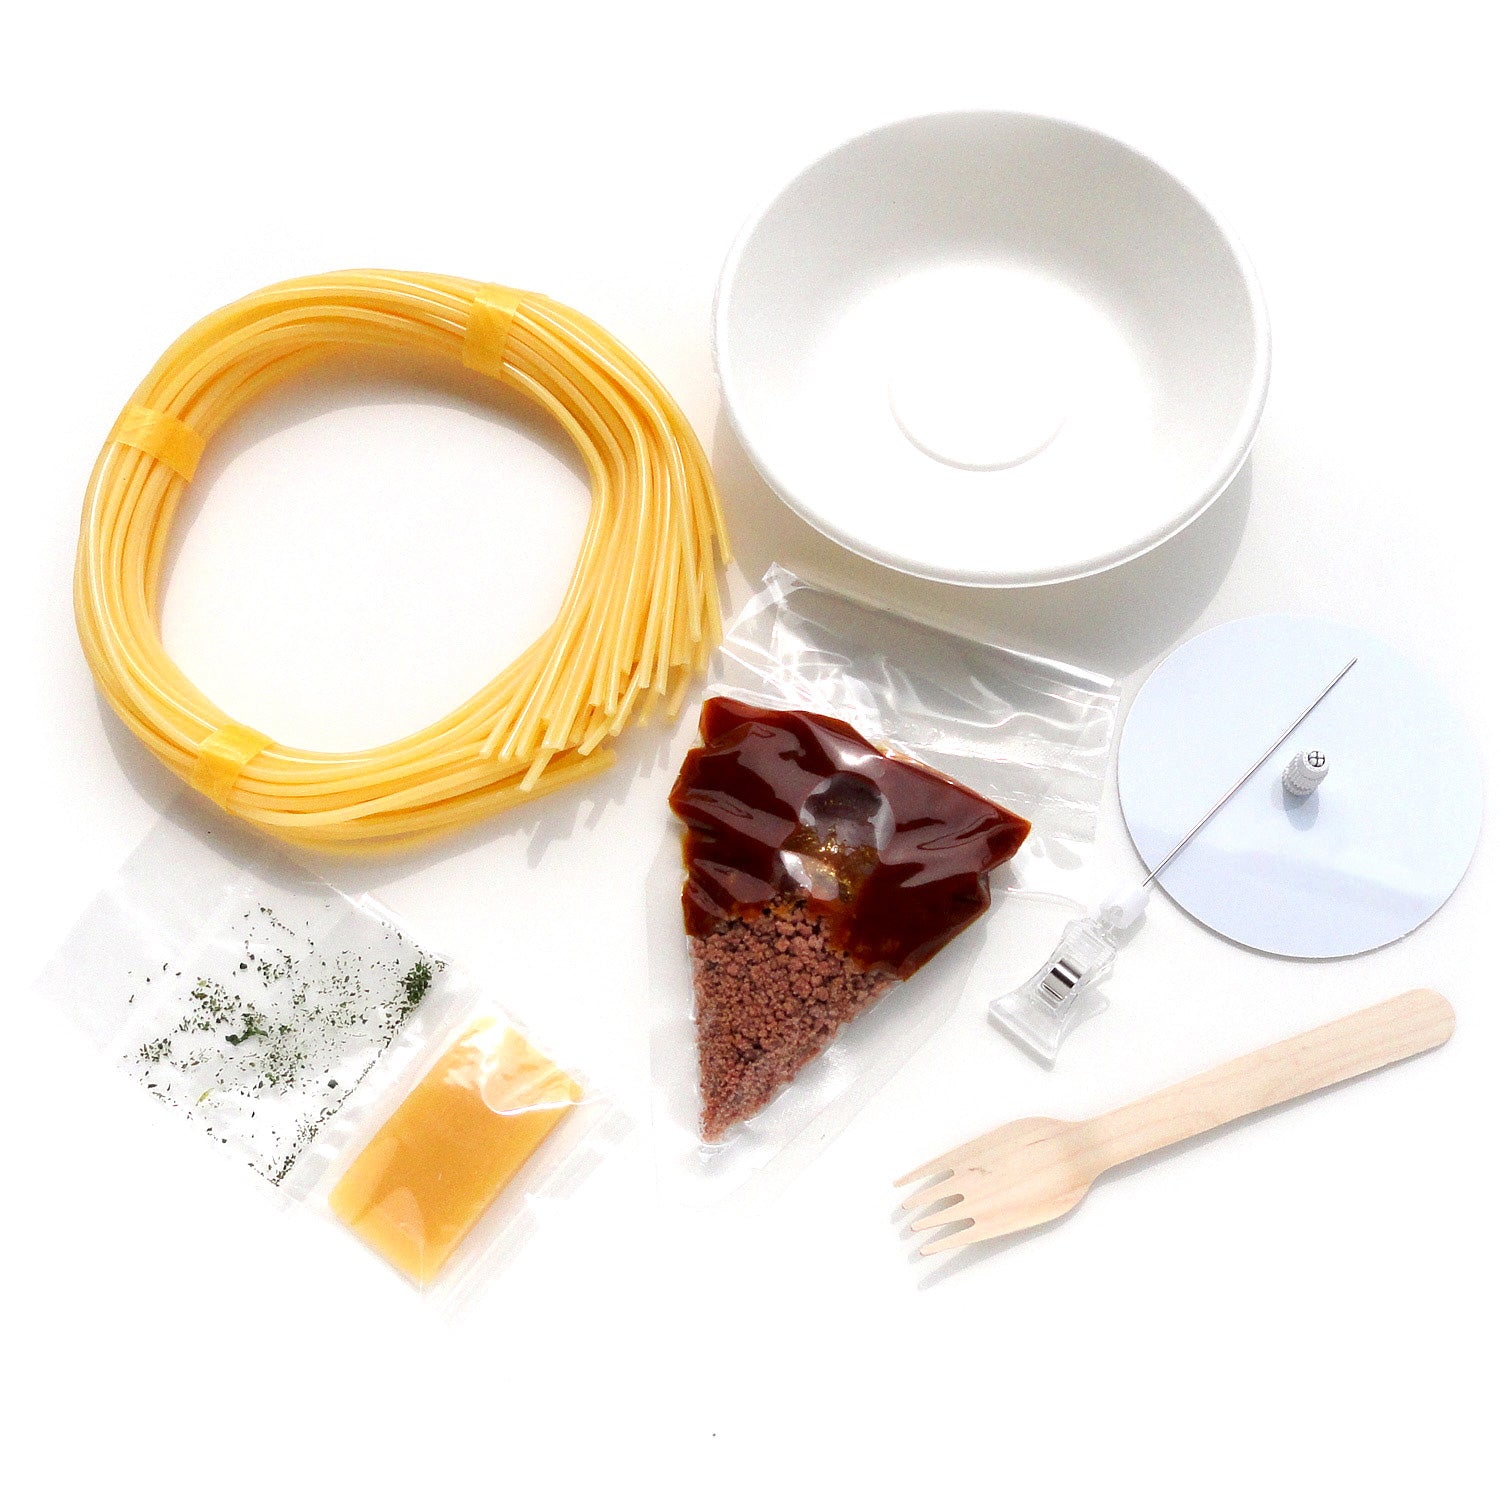 自分でつくる食品サンプル製作キット「さんぷるんvol.2 ミートソーススパゲッティ」の内容物画像です。